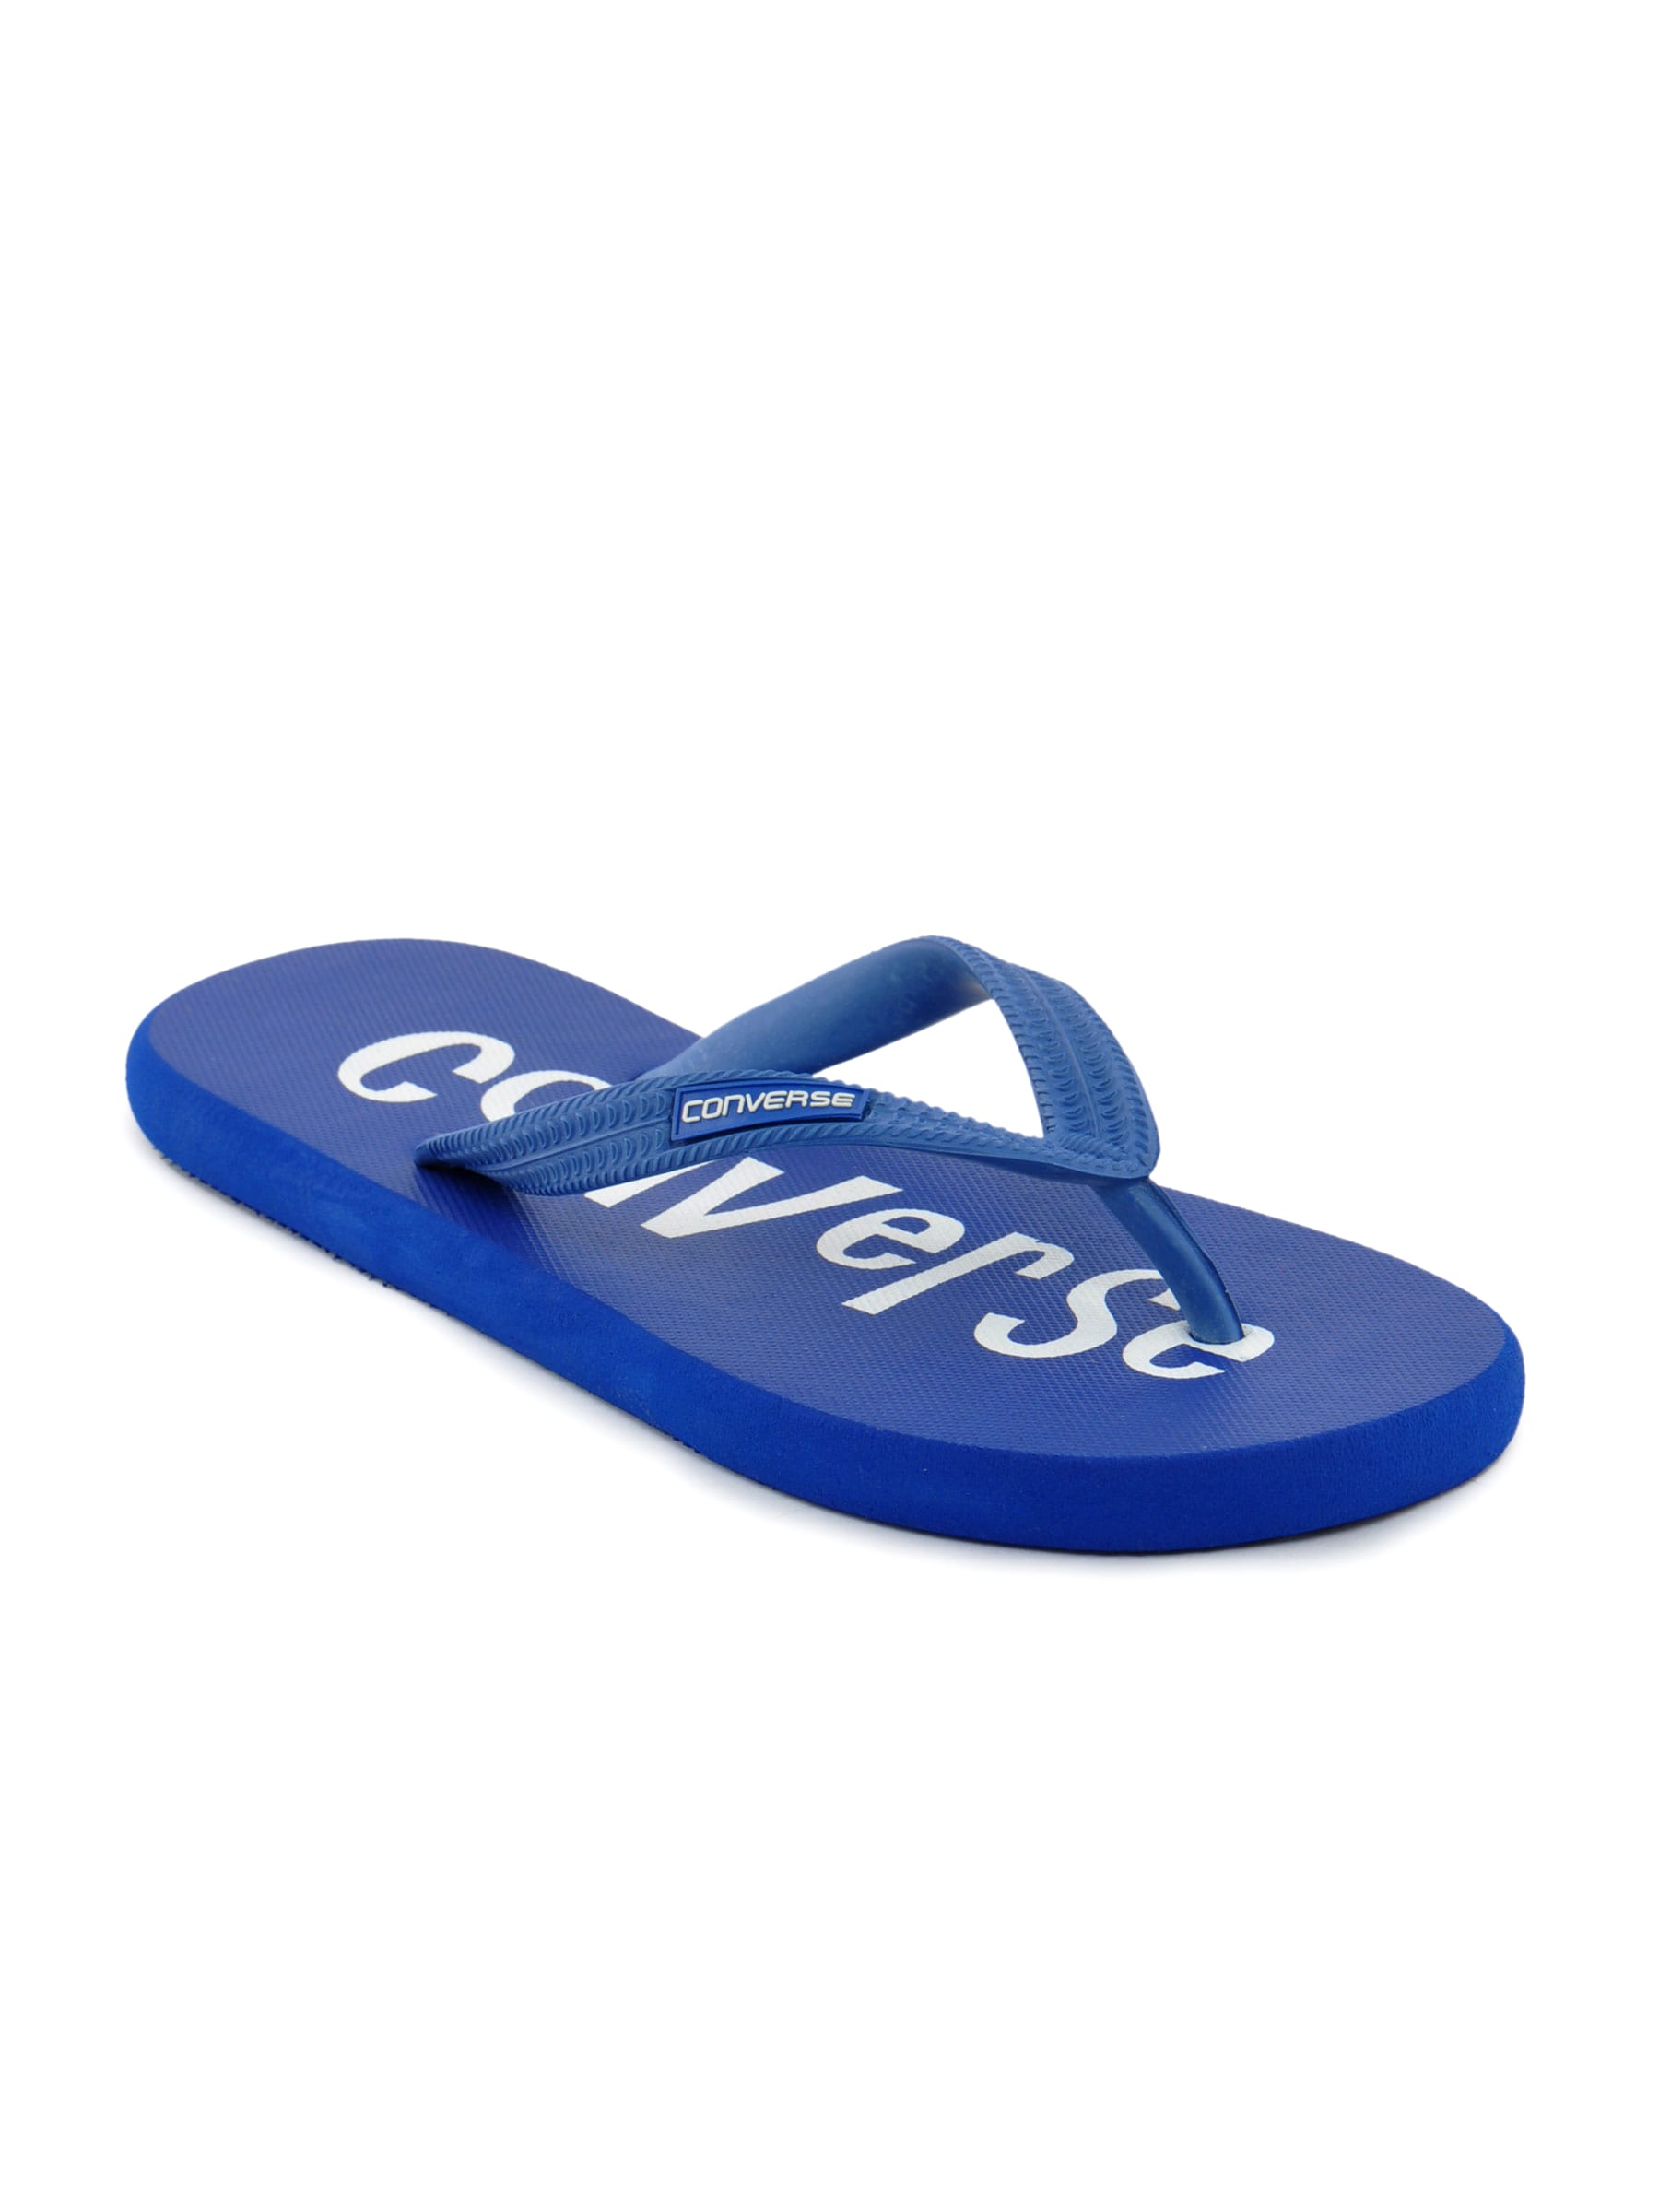 Converse Unisex Casual Blue Slipper